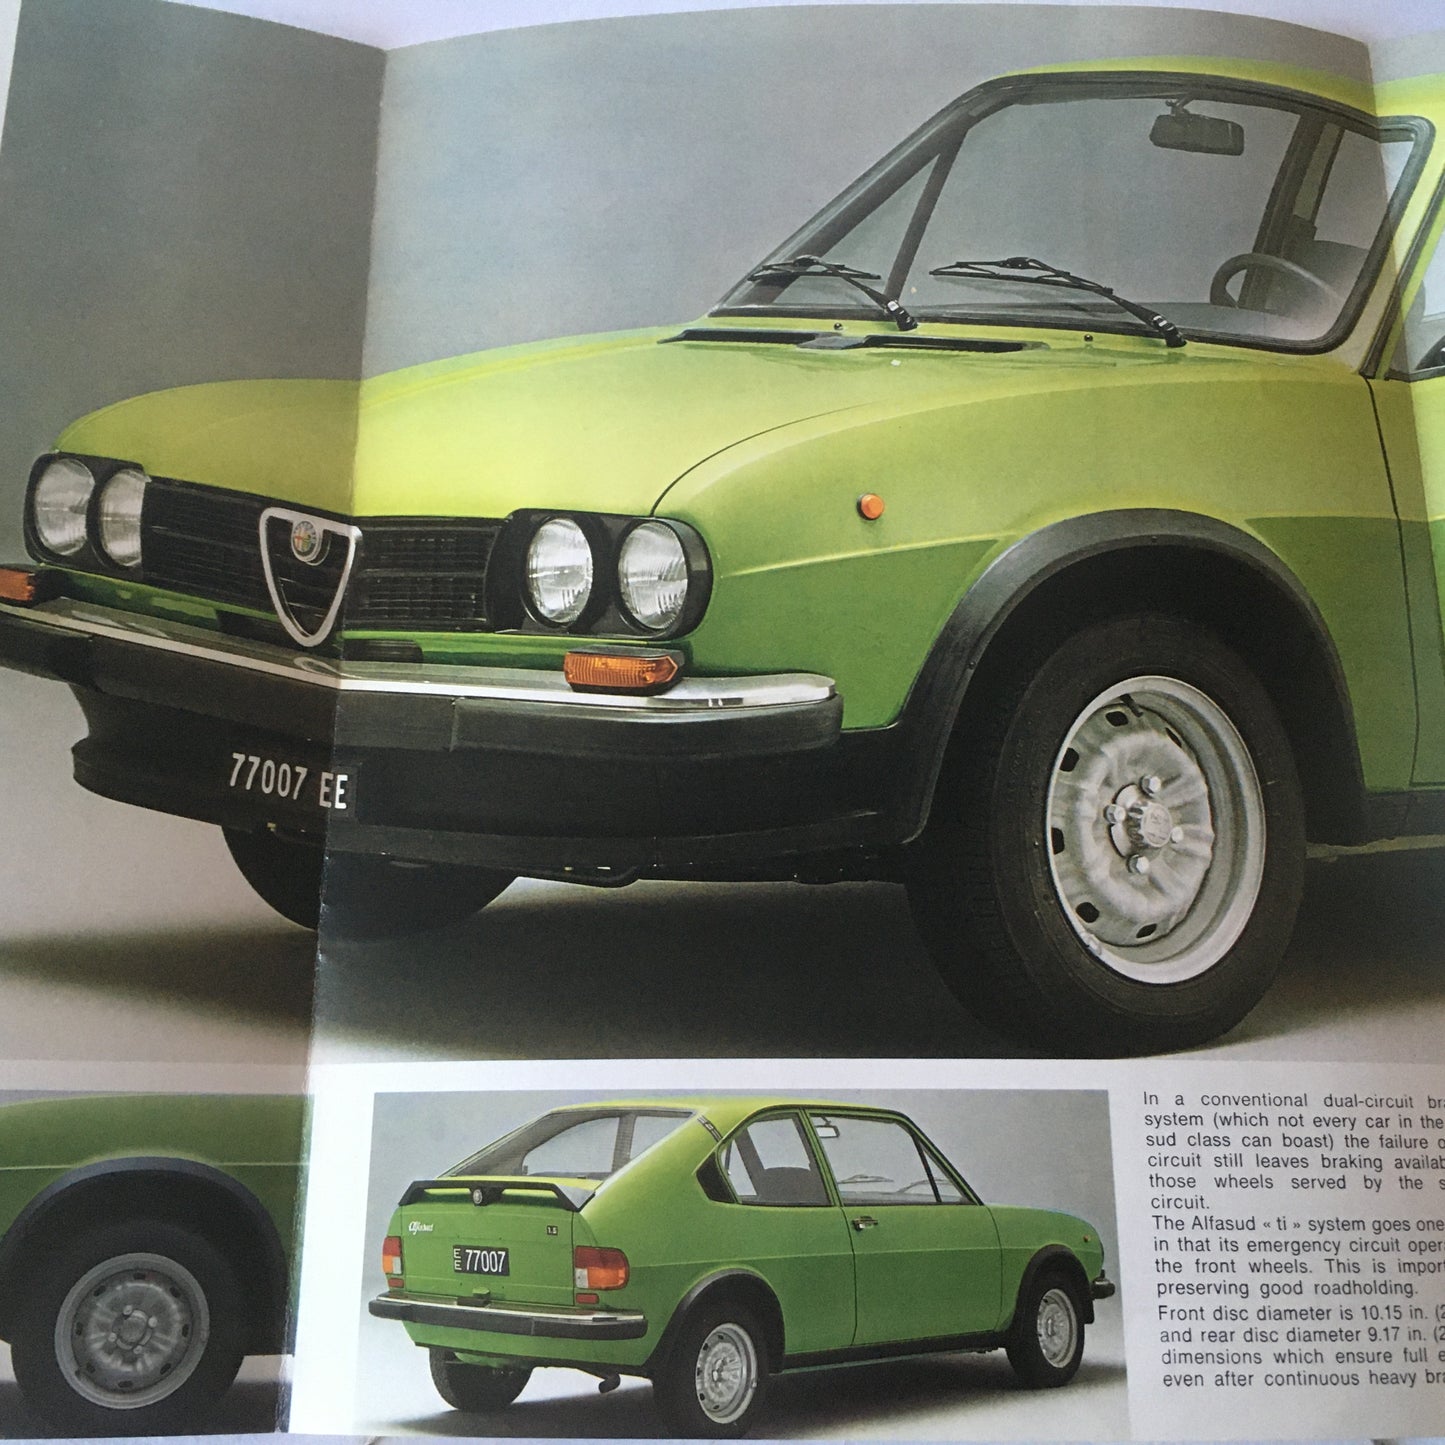 Alfa Romeo, Brochure Alfasud TI 1200 e Alfasud TI 1500, Anni '70, Lingua Inglese